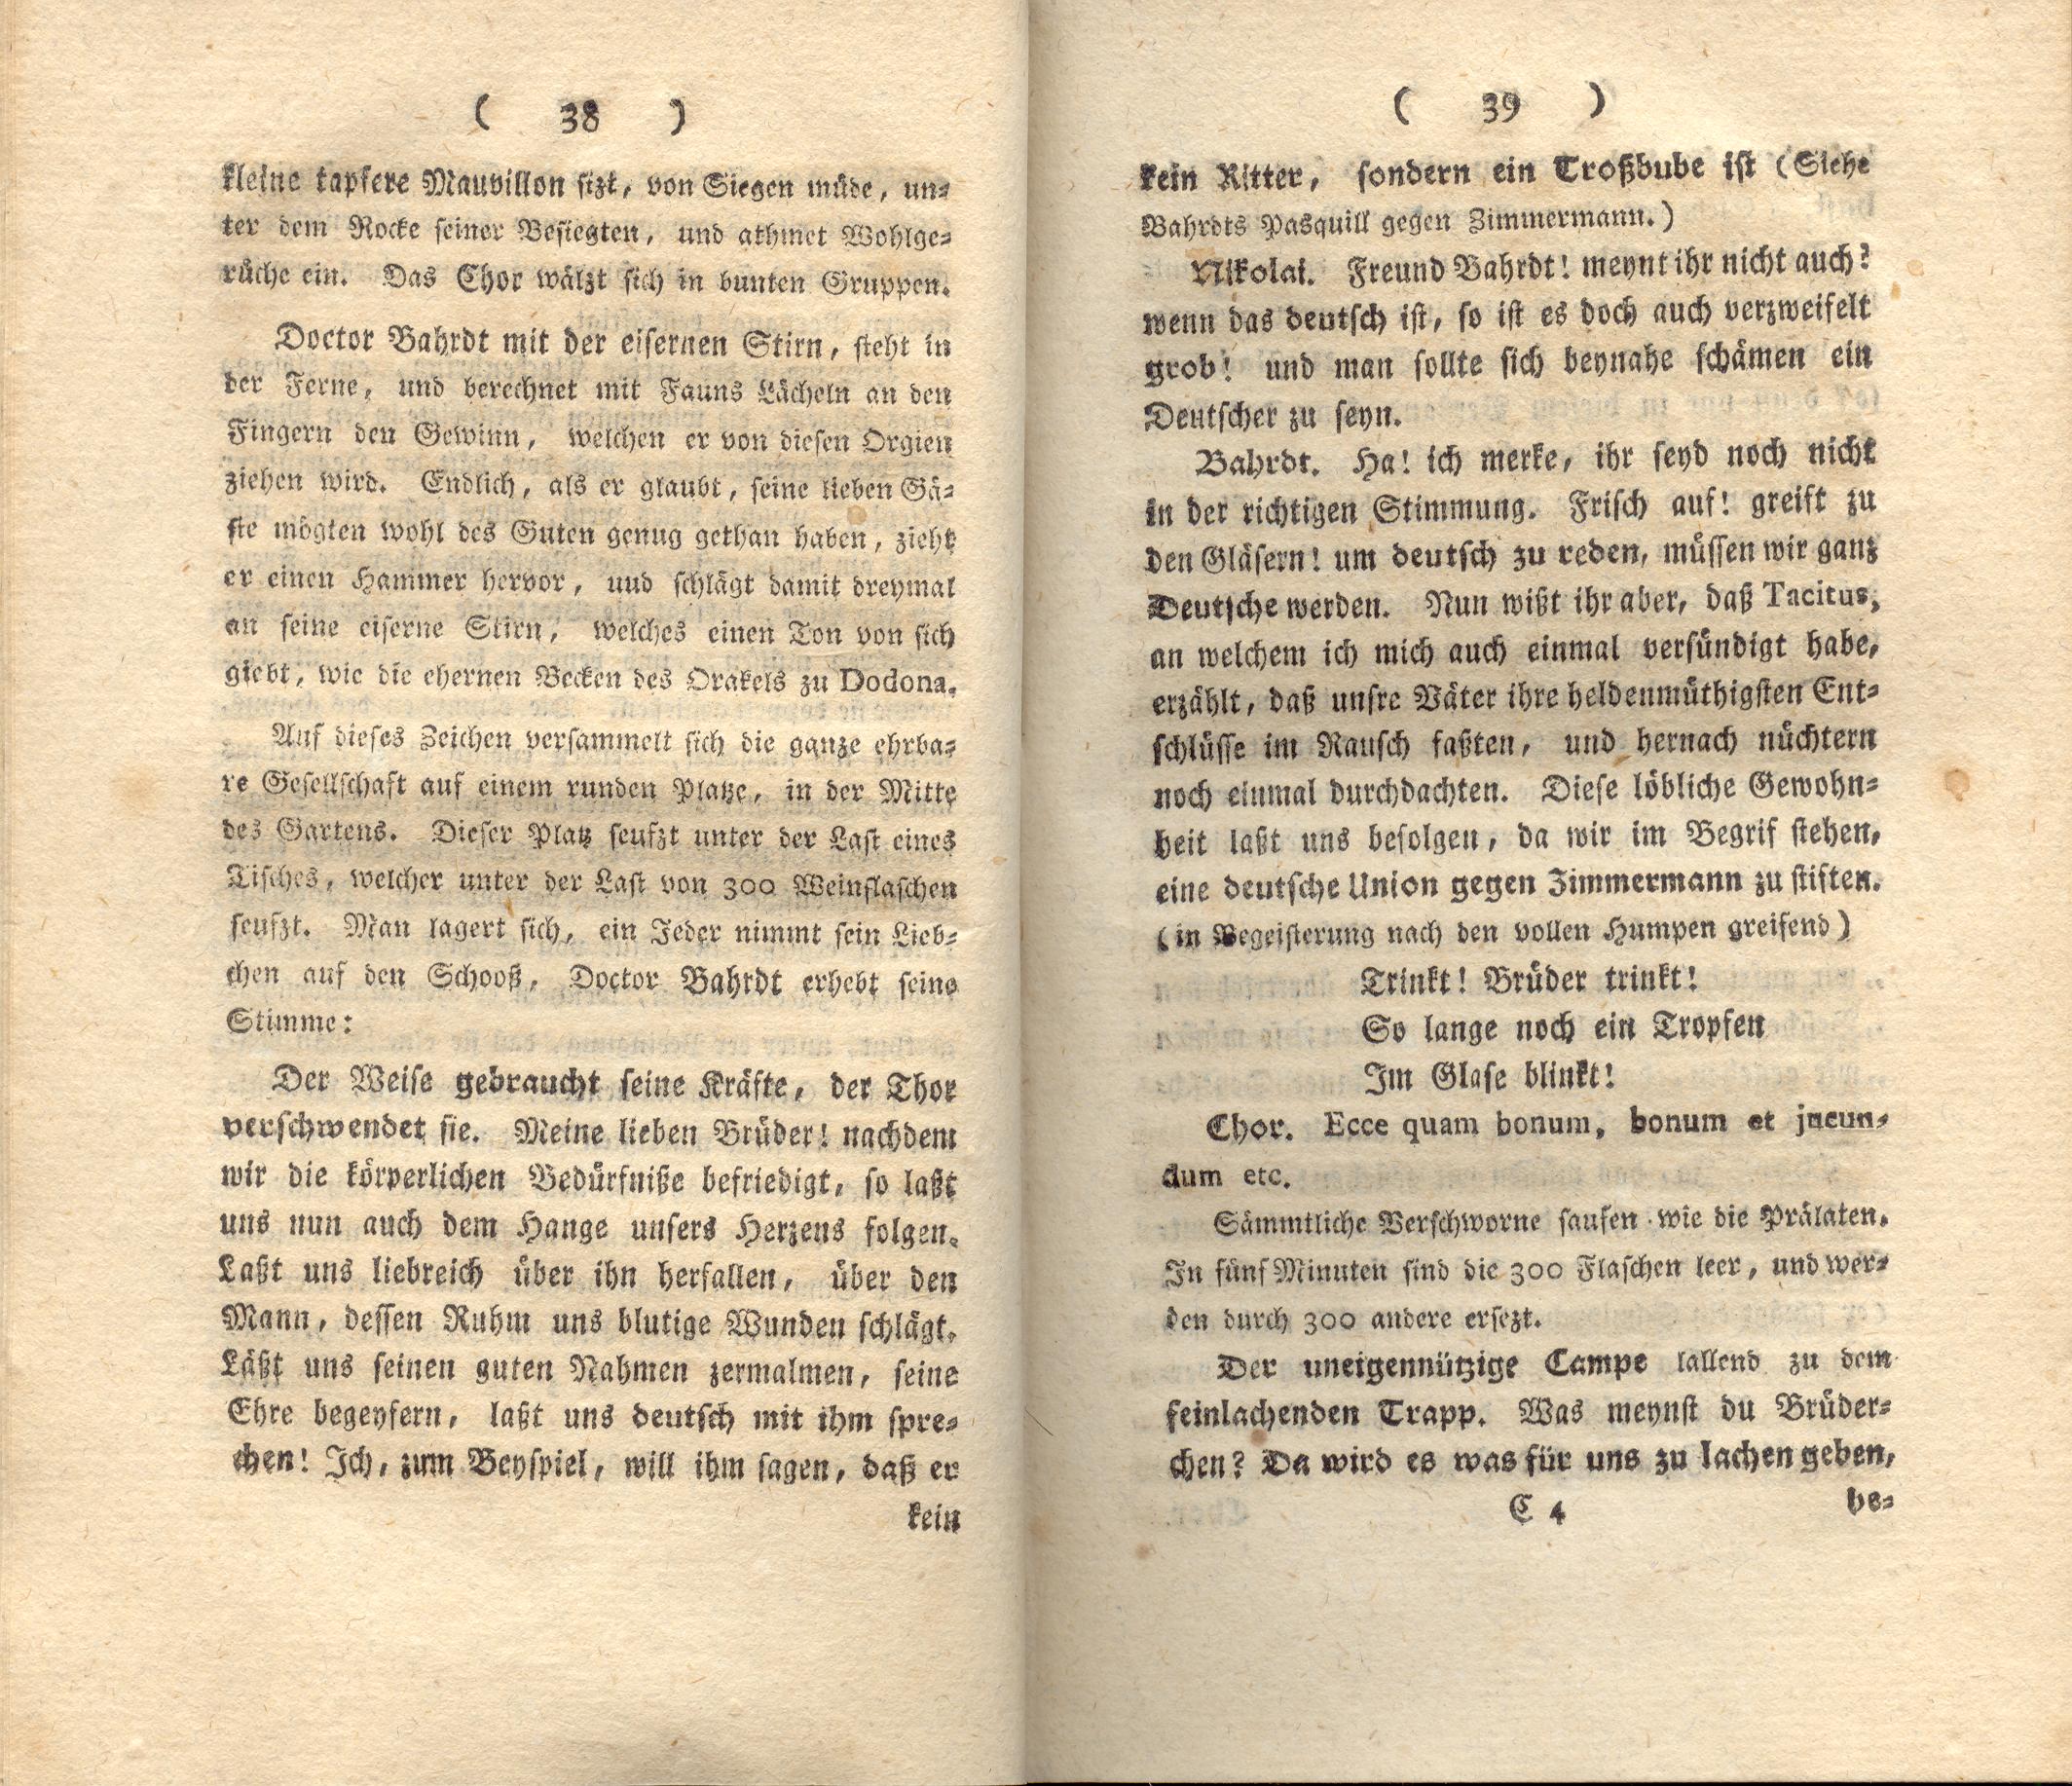 Doctor Bahrdt mit der eisernen Stirn (1790) | 21. (38-39) Основной текст